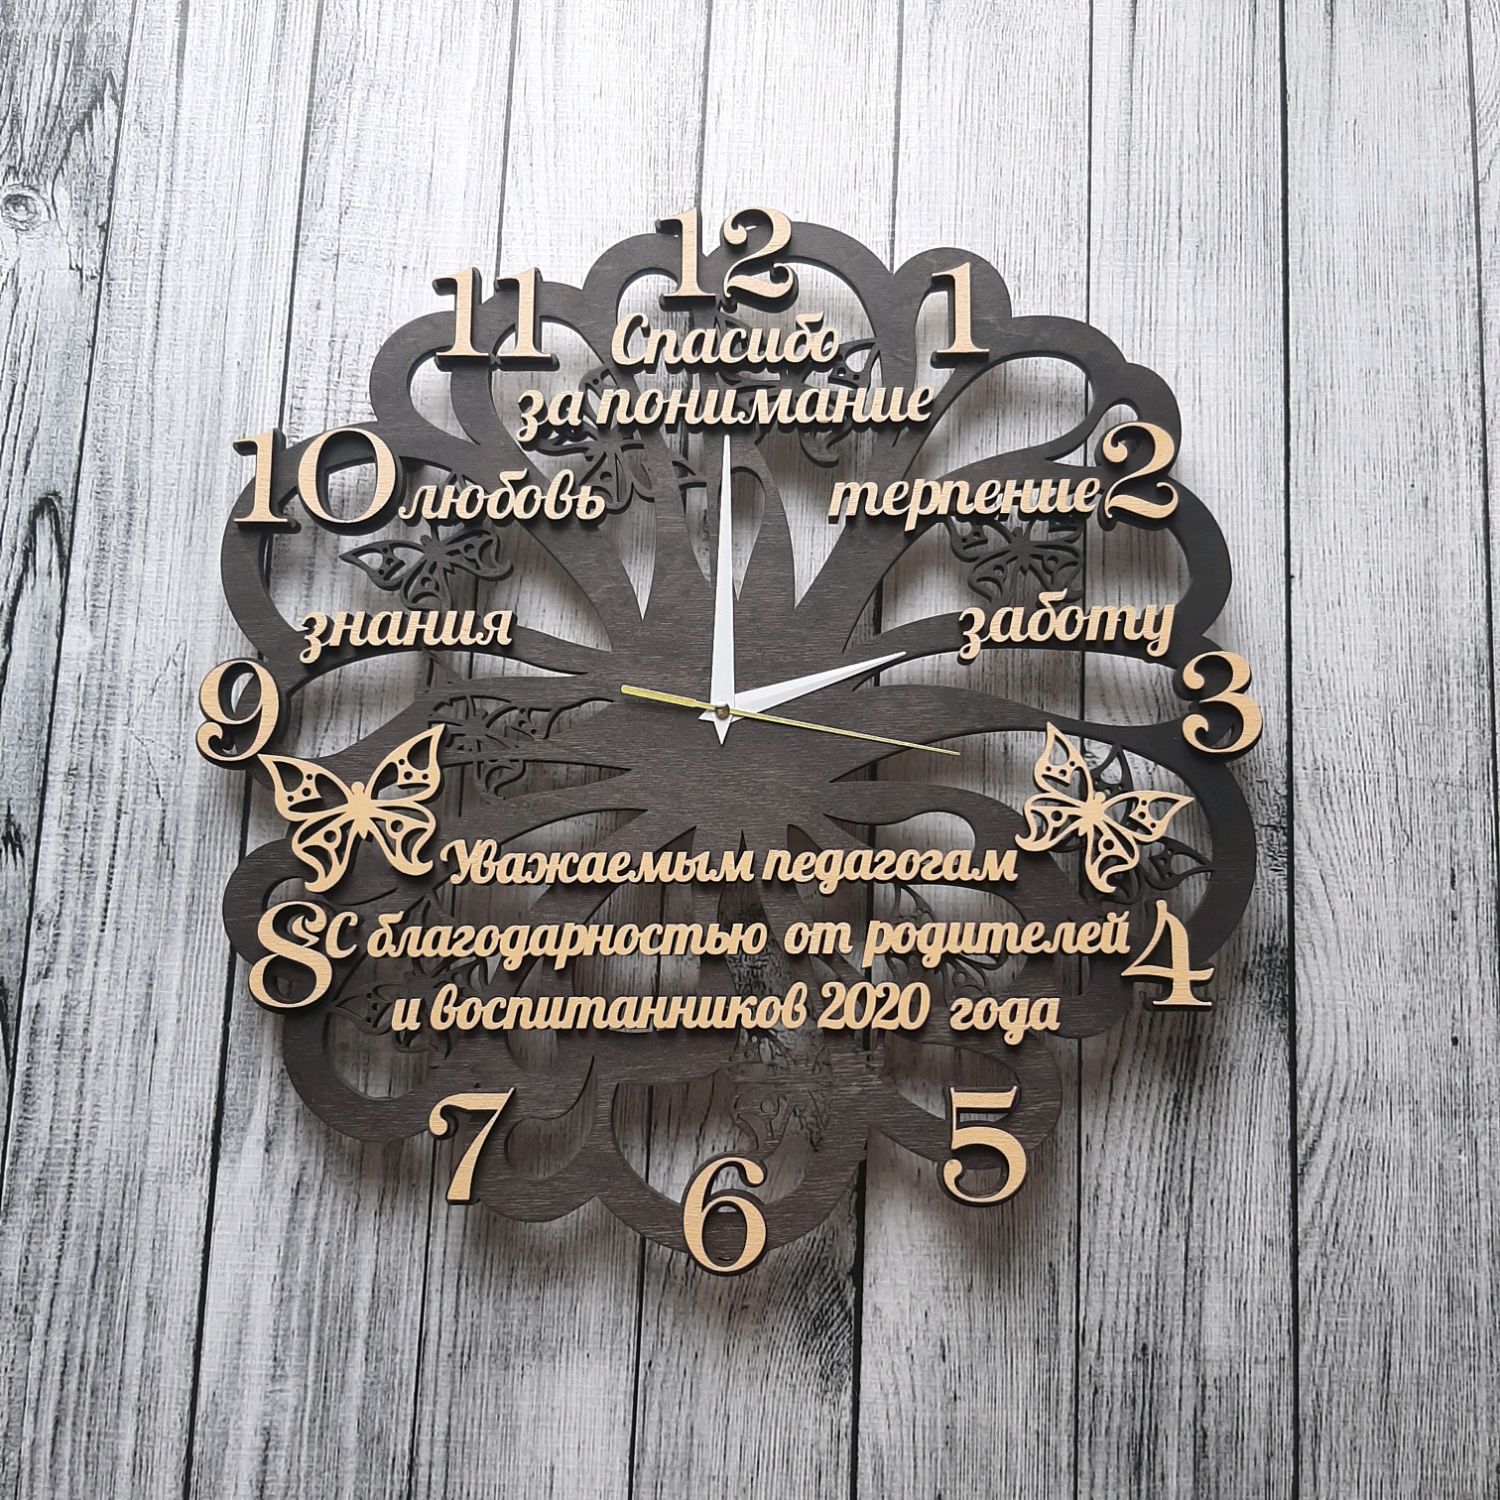 Часы подарок школе. Часы настенные учителю. Часы деревянные именные. Часы учителю из фанеры. Часы учителю из дерева.